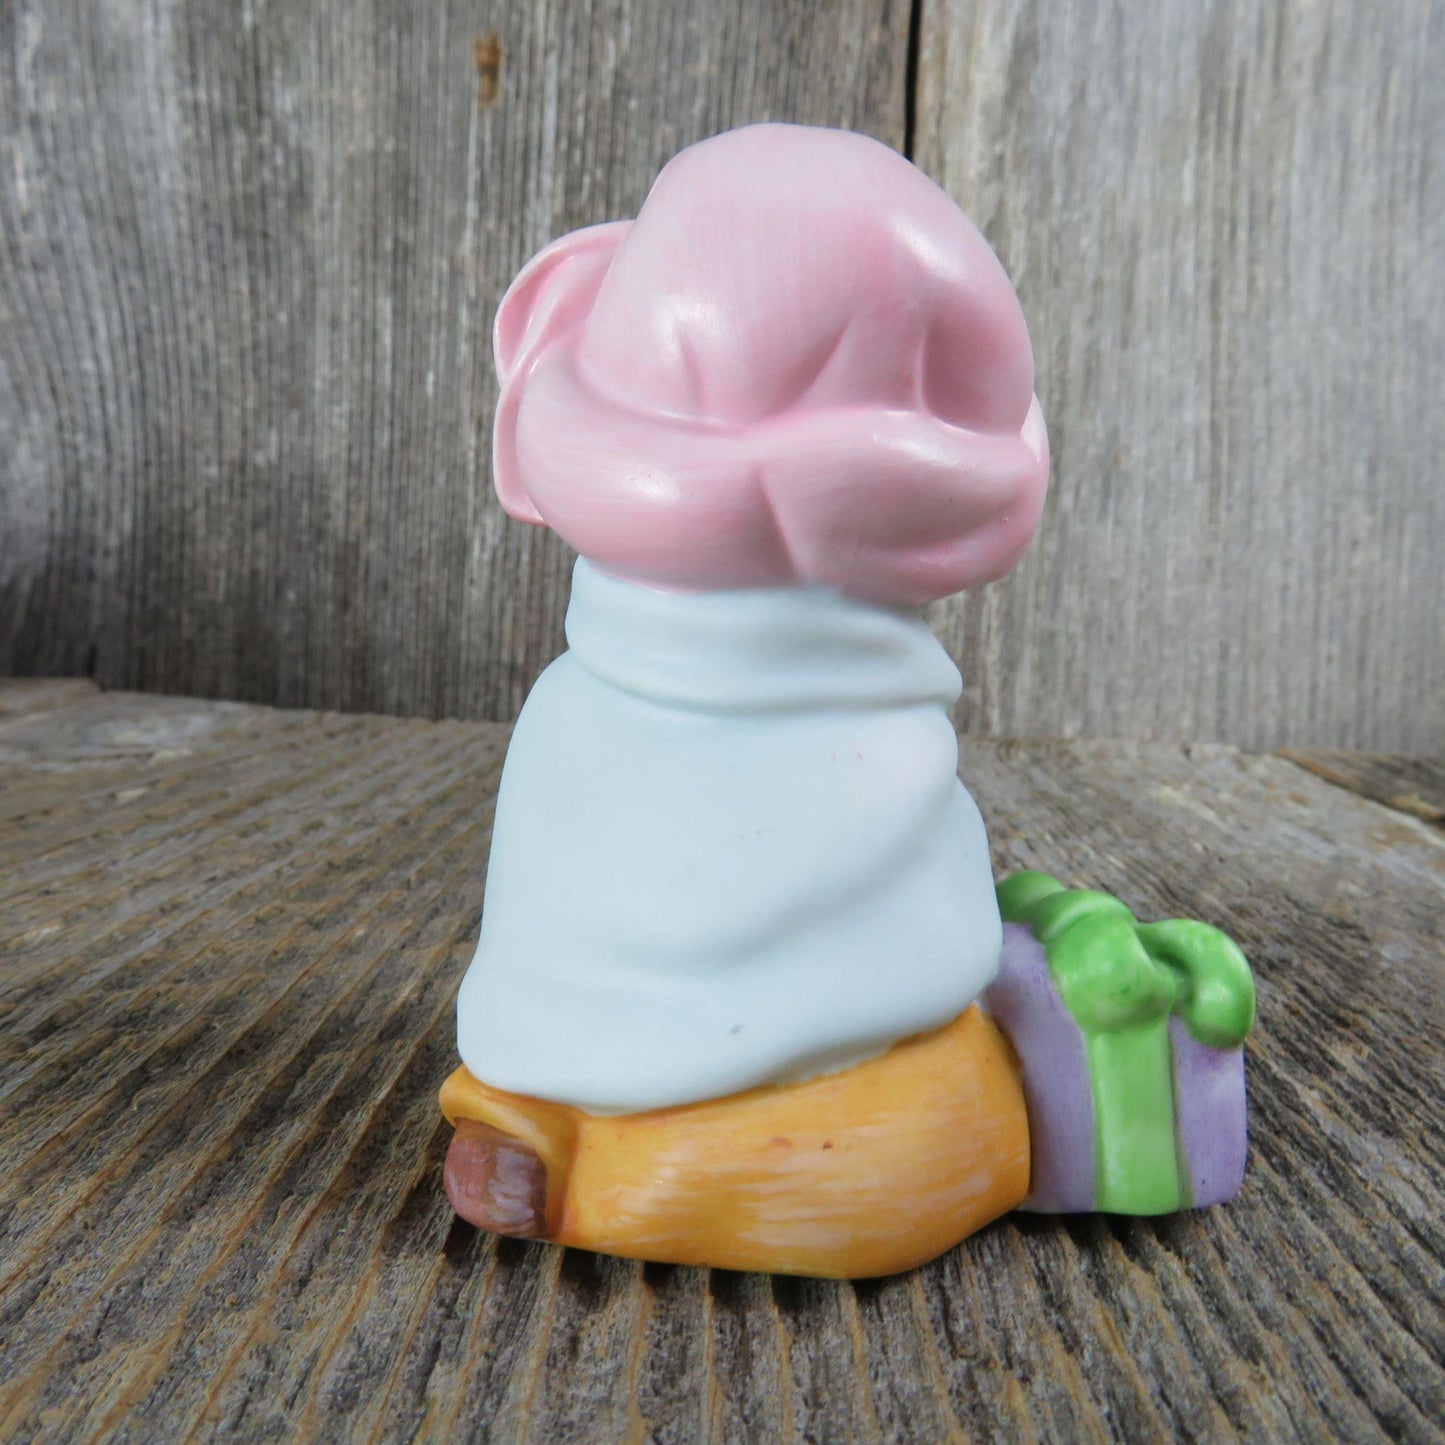 Vintage Wiseman Figurine Kneeling Avon Nativity Heavenly Blessings Gifts 1986